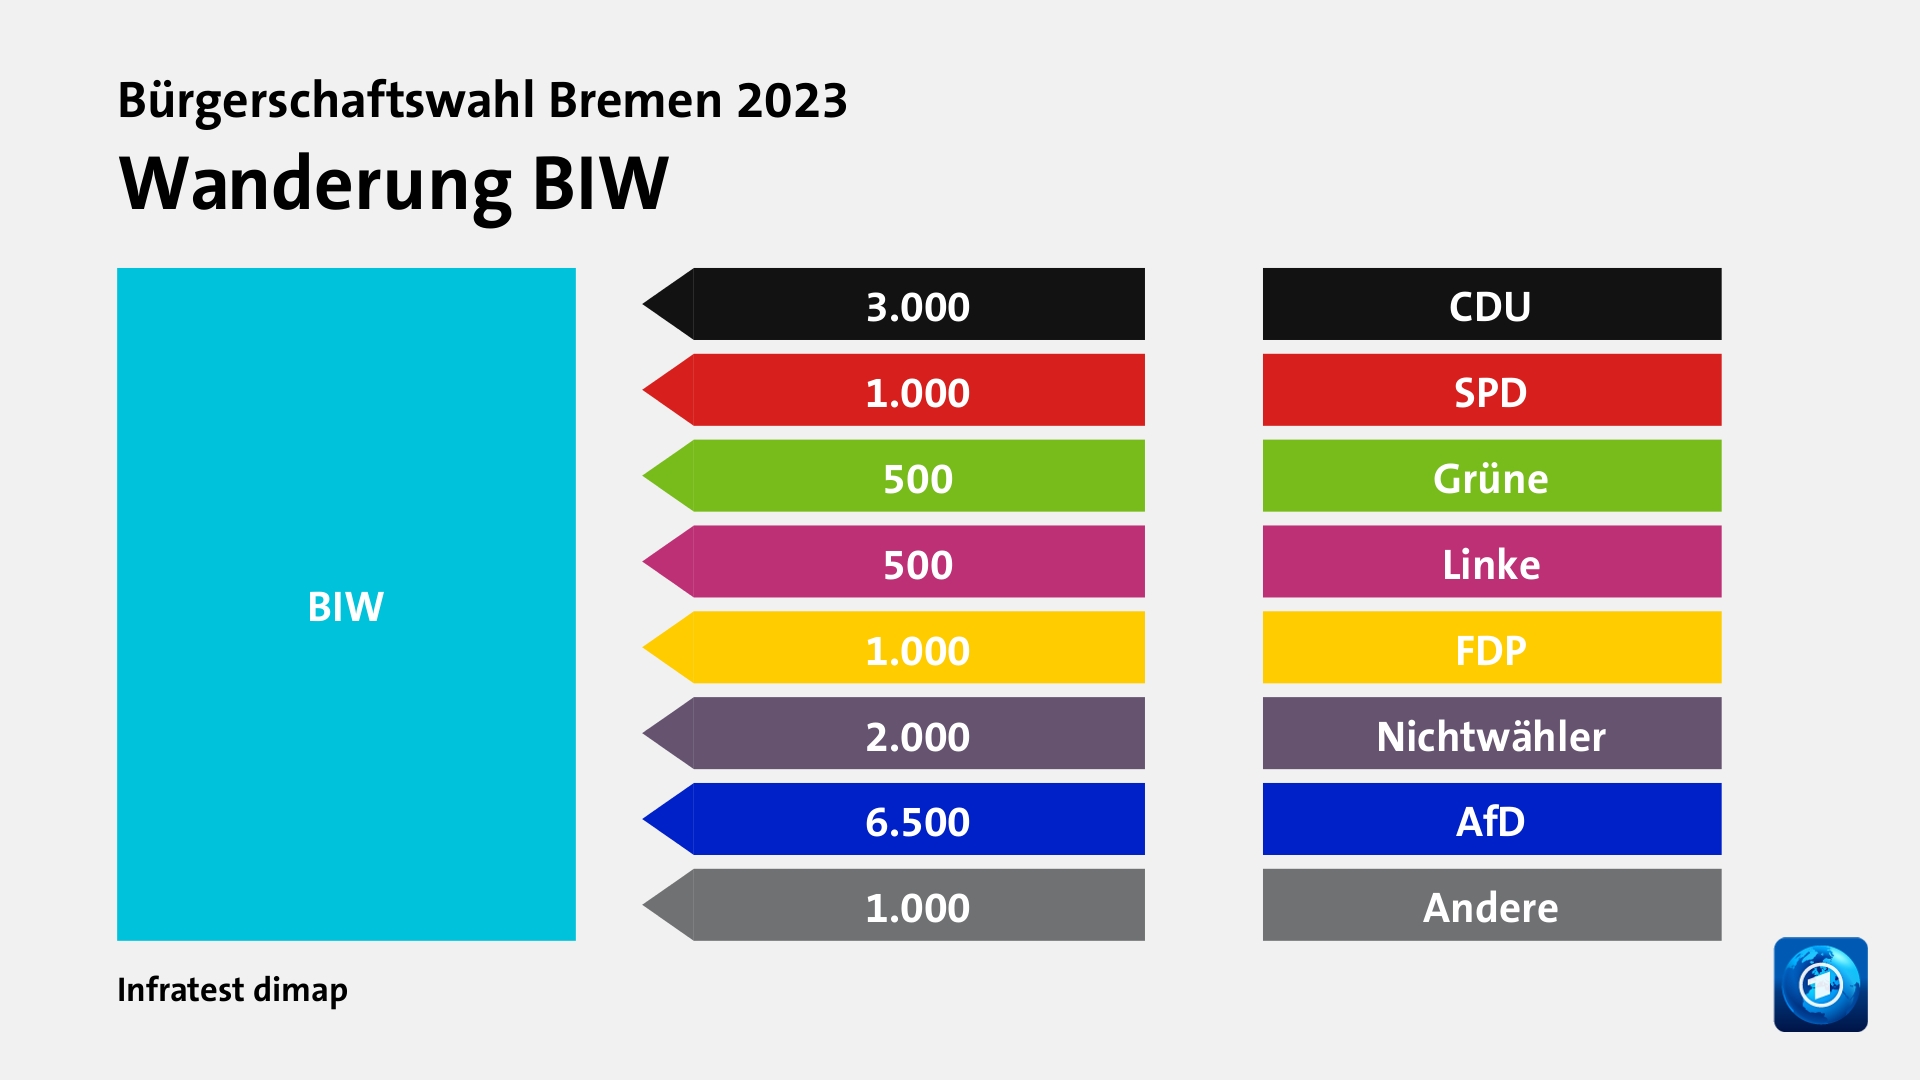 Wanderung BIWvon CDU 3.000 Wähler, von SPD 1.000 Wähler, von Grüne 500 Wähler, von Linke 500 Wähler, von FDP 1.000 Wähler, von Nichtwähler 2.000 Wähler, von AfD 6.500 Wähler, von Andere 1.000 Wähler, Quelle: Infratest dimap